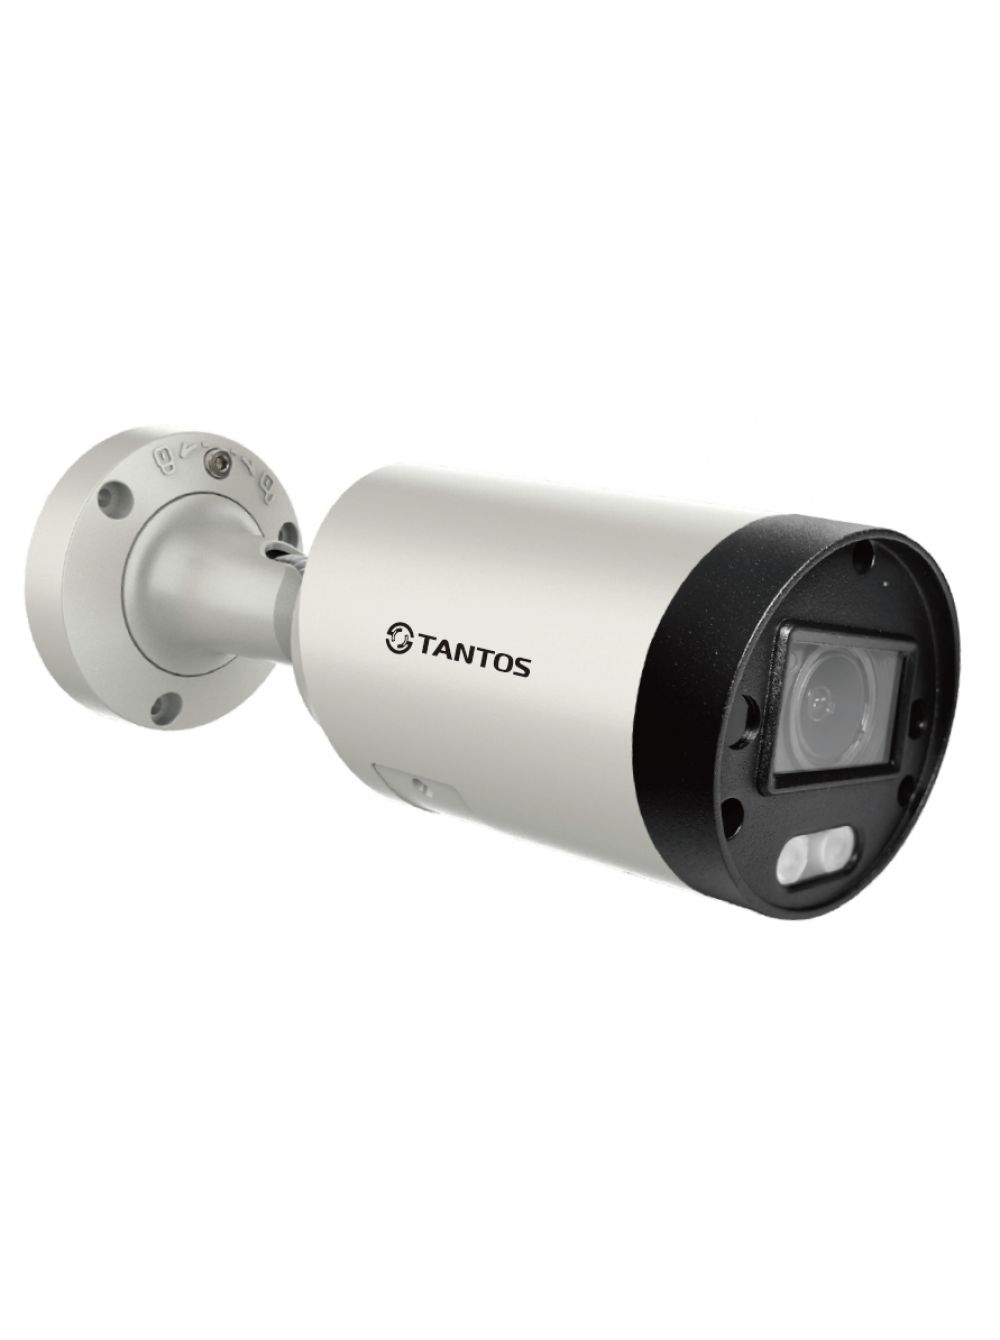 уличная цилиндрическая ip видеокамера с ии 2мп 1 2 8 cmos моторизованный объектив 2 713 5мм механический ик фильтр wdr 120дб чувствительность 0 IP видеокамера Tantos TSi-Pn853VZ (2.7-13.5 мм) уличная цилиндрическая